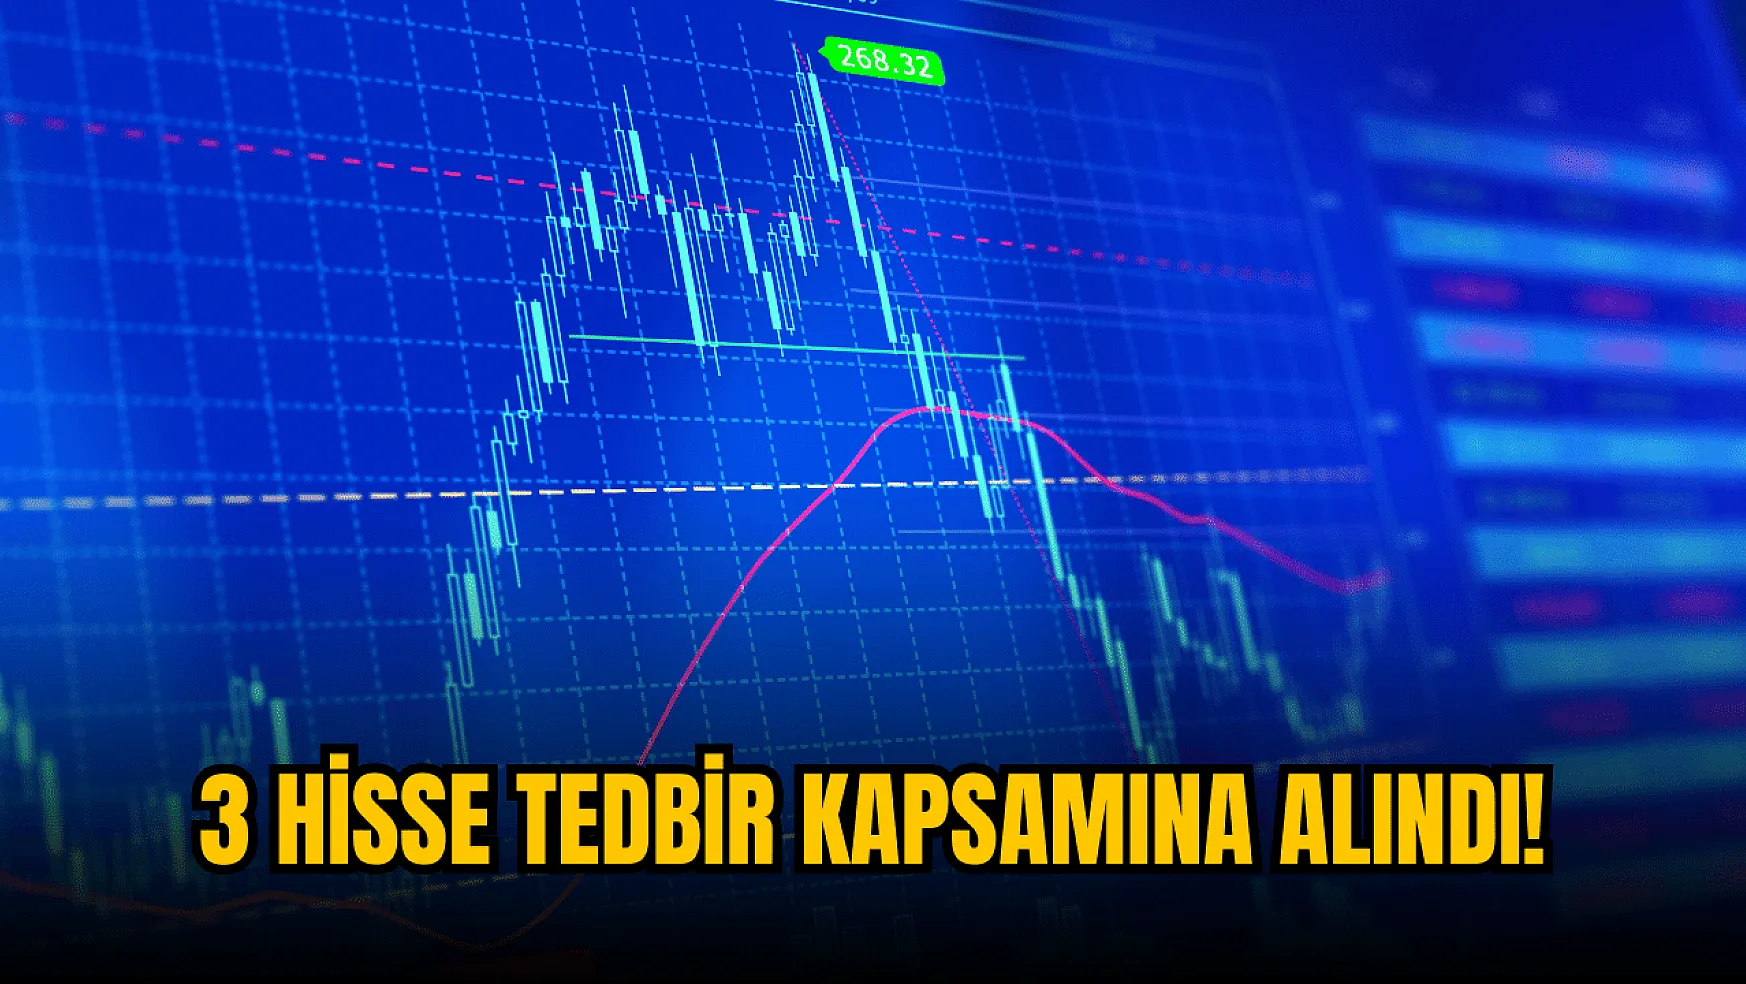 Borsa İstanbul, 3 hisseye tedbir getirdi!